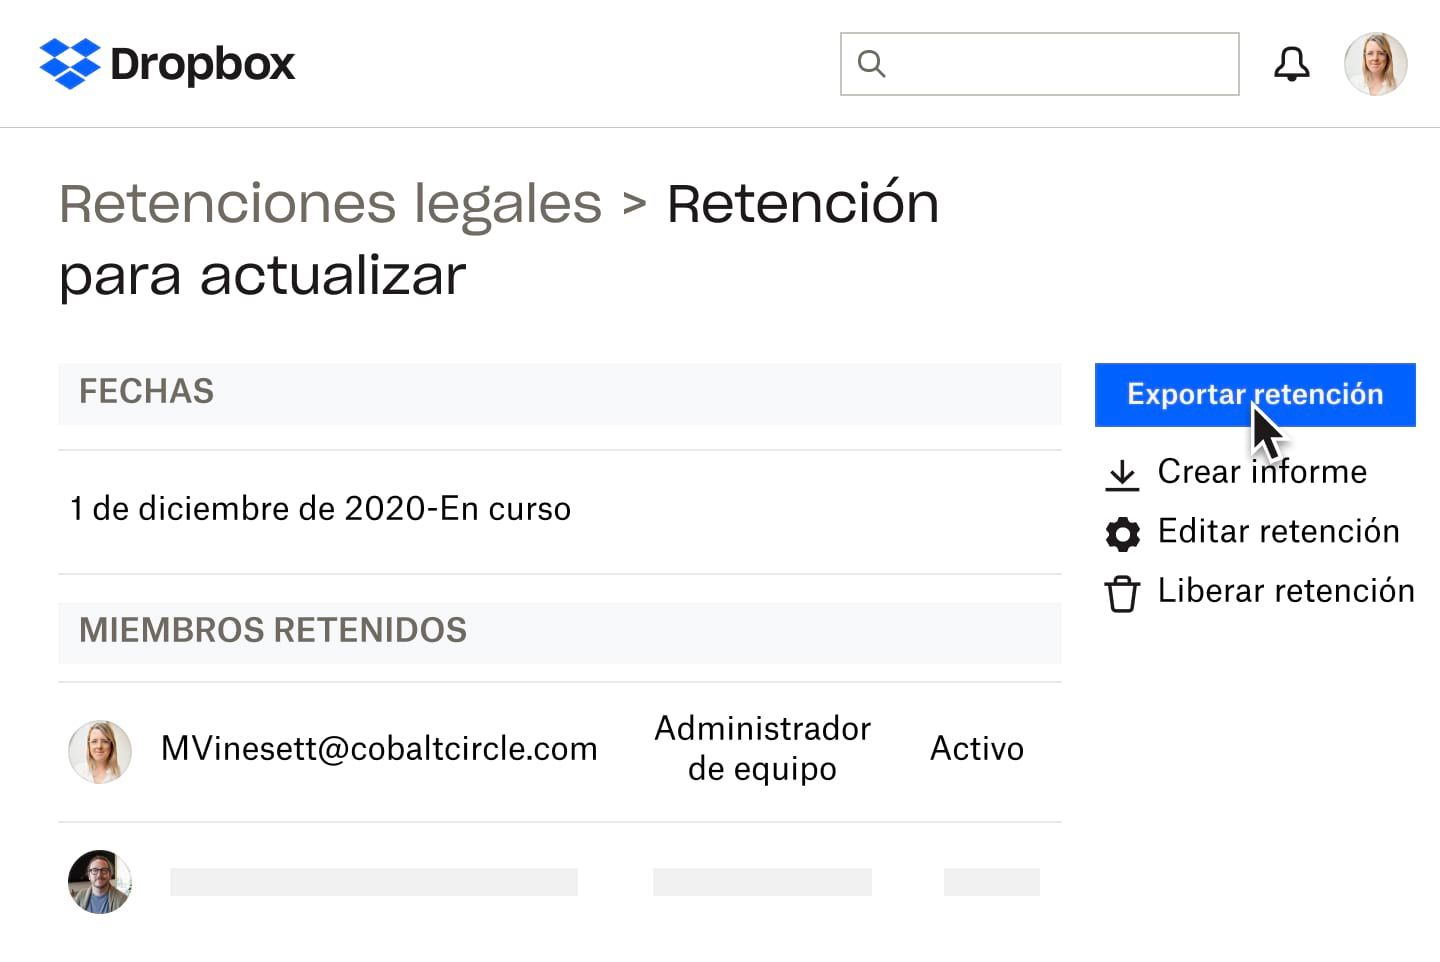 Documento de retenciones legales en Dropbox con opciones de configuración de uso compartido y edición